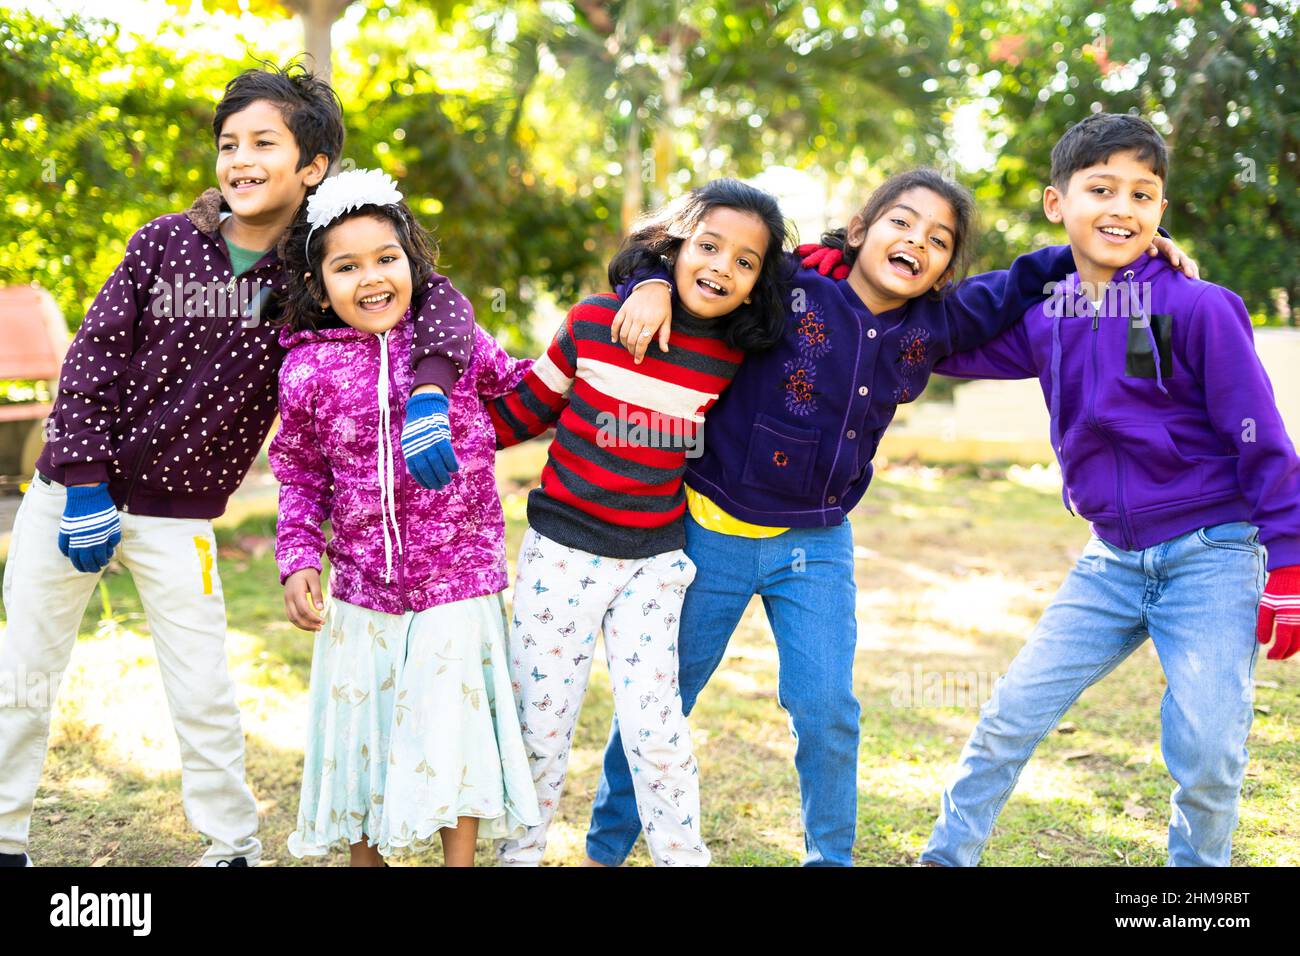 indische Teenager-Kinder genießen oder verbringen Zeit mit Freunden beim Tanzen im Park - Konzept der Feier, Picknick, Winterurlaub und Freizeitaktivitäten Stockfoto